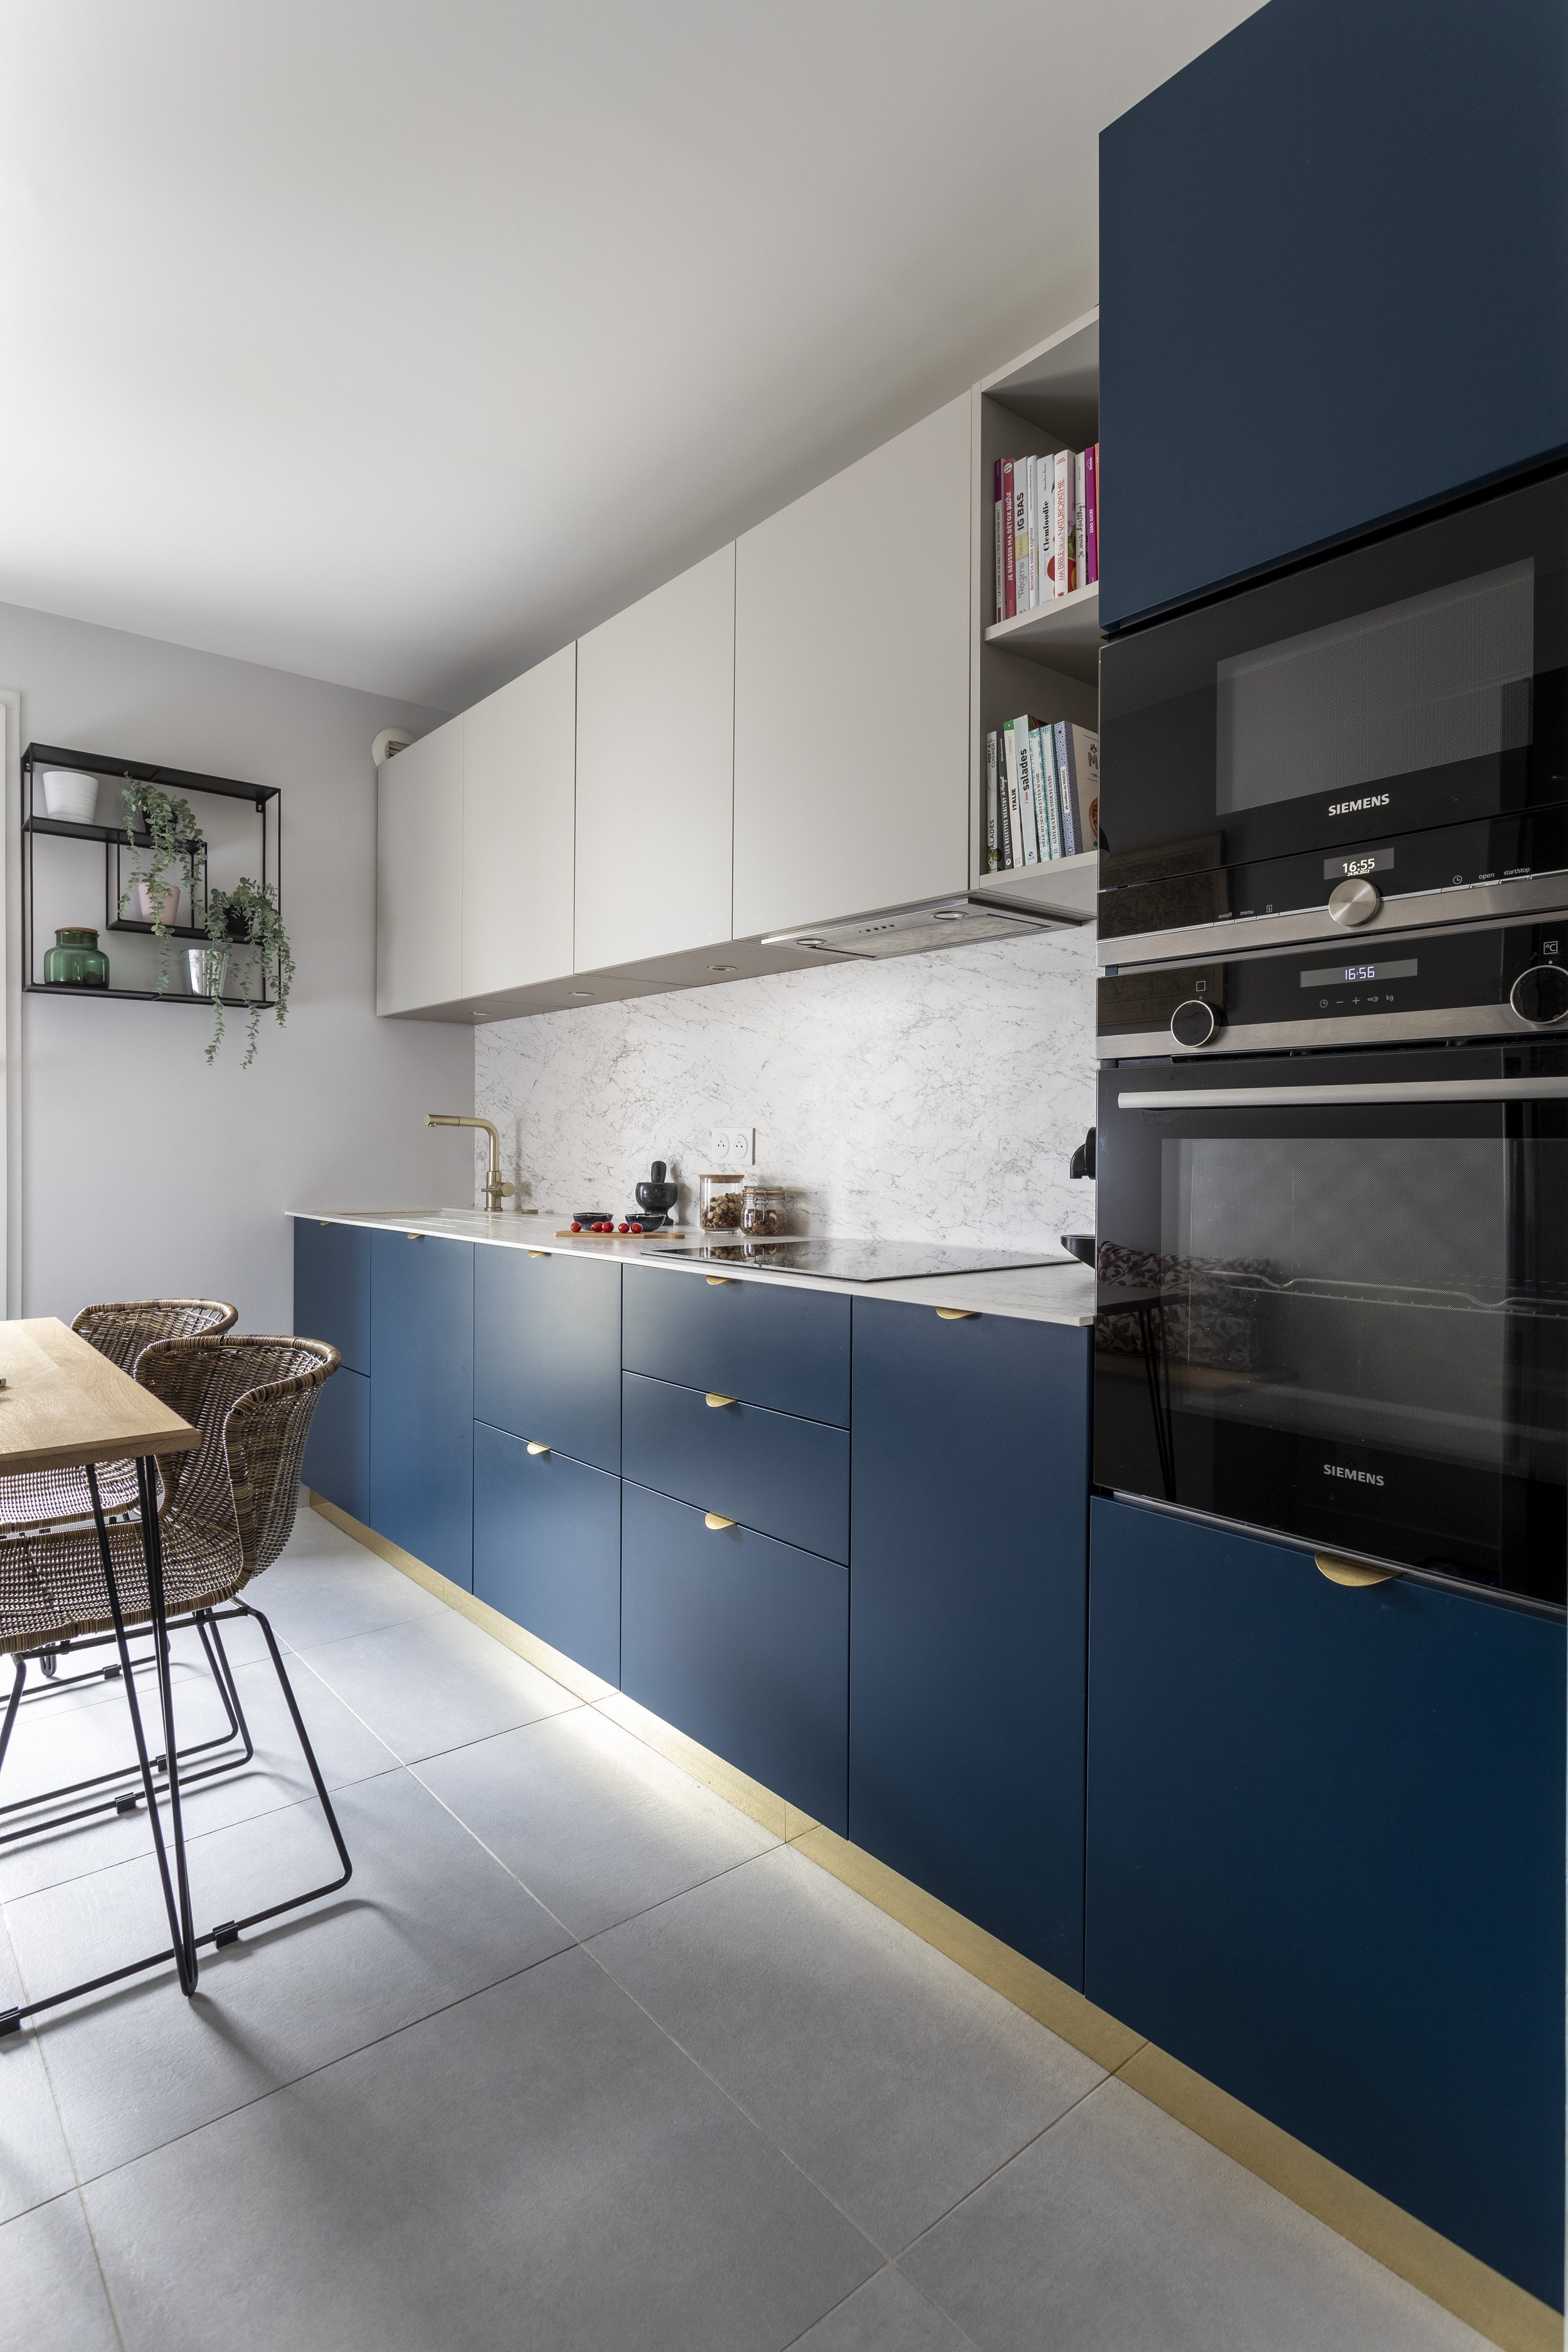 architecte intérieur décoration paris appartement renovation cuisine bleue marine.jpg